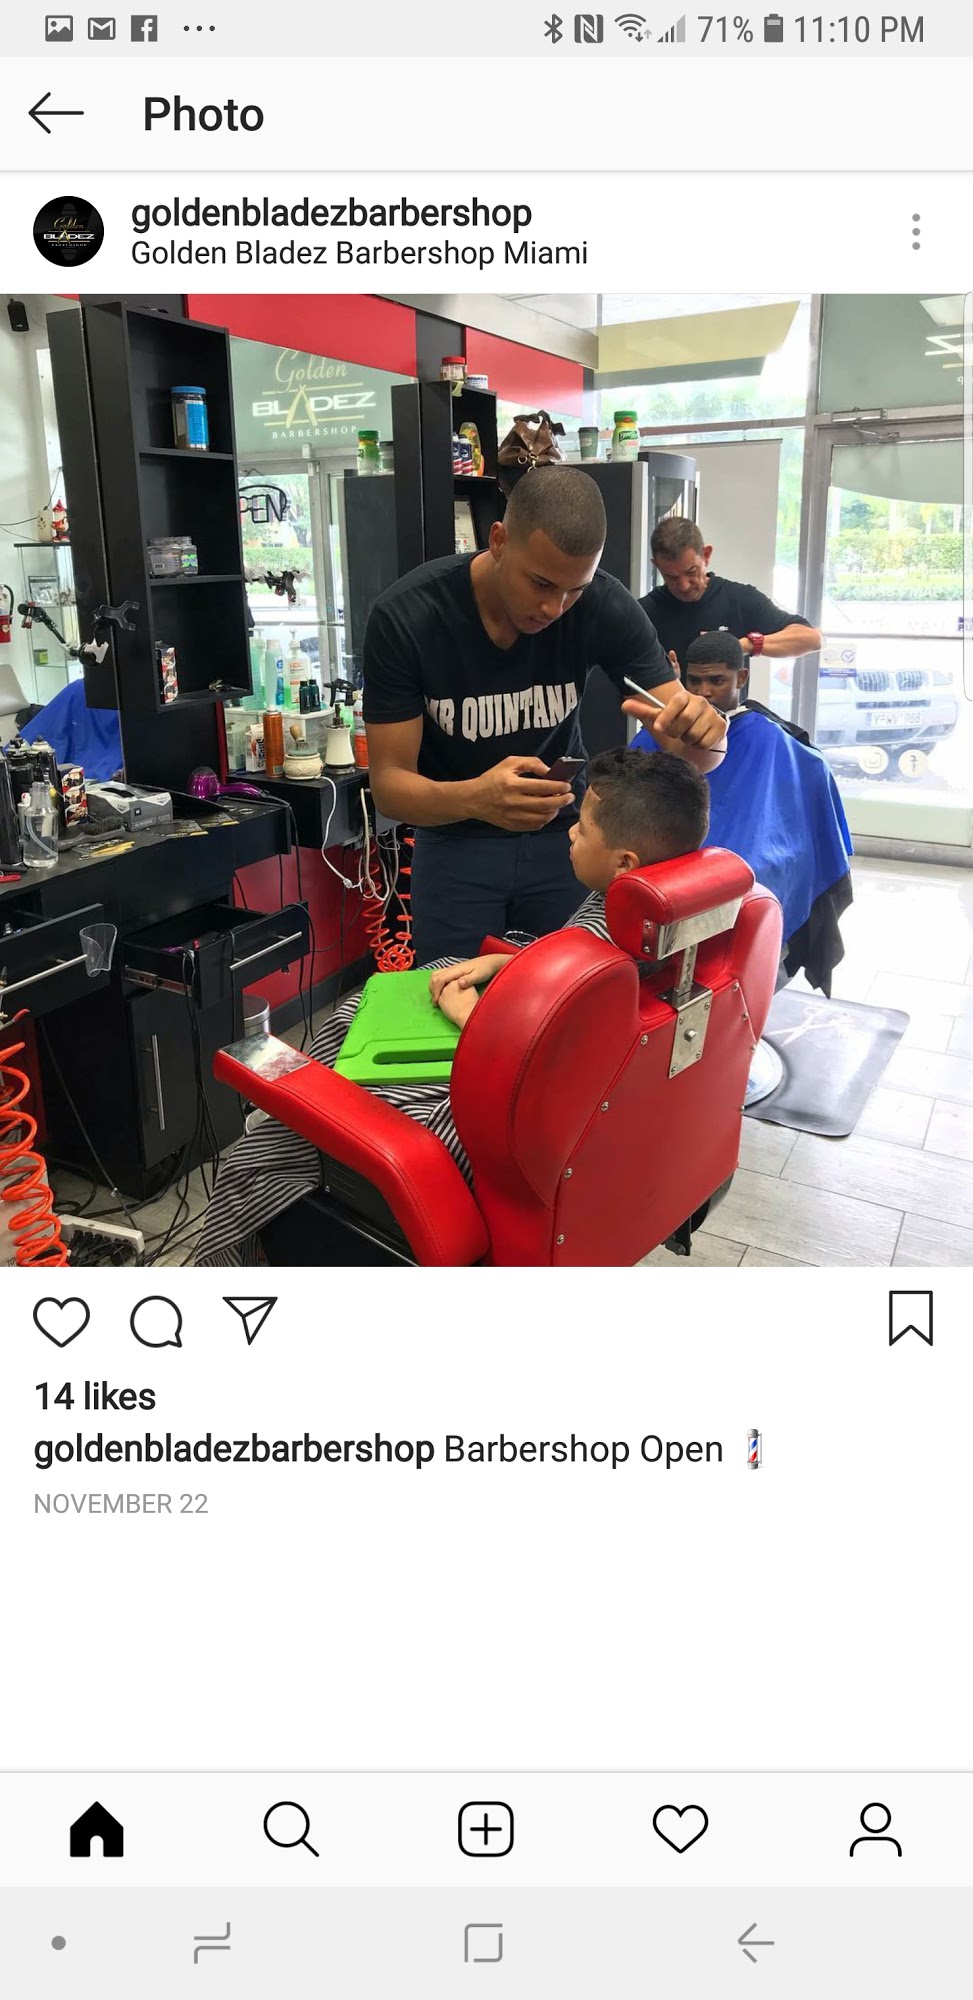 Golden Bladez Barbershop